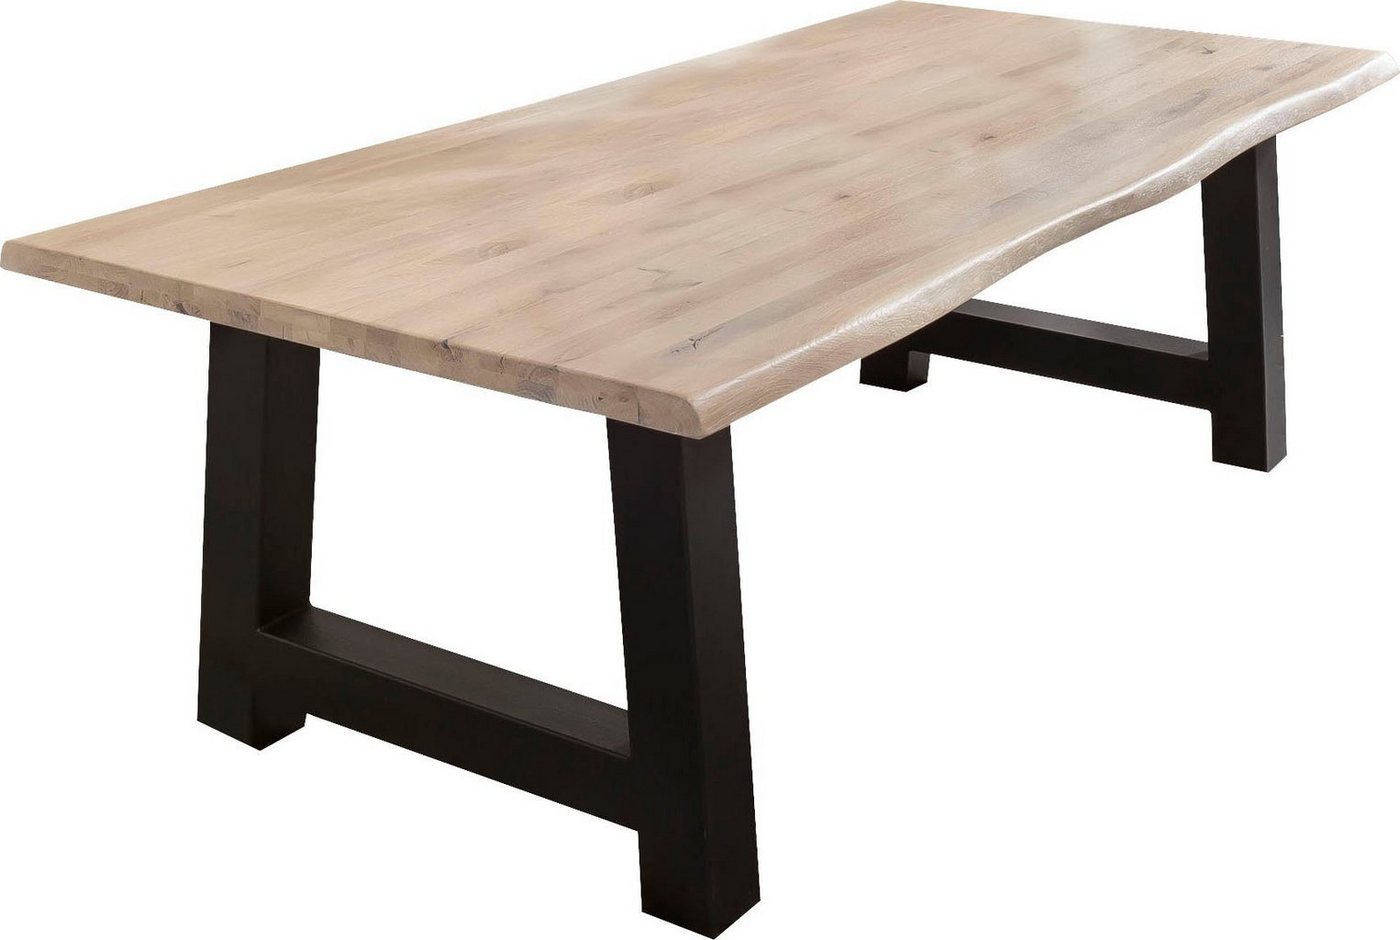 Esstische und andere Tische von HOME AFFAIRE. Online kaufen bei Möbel &